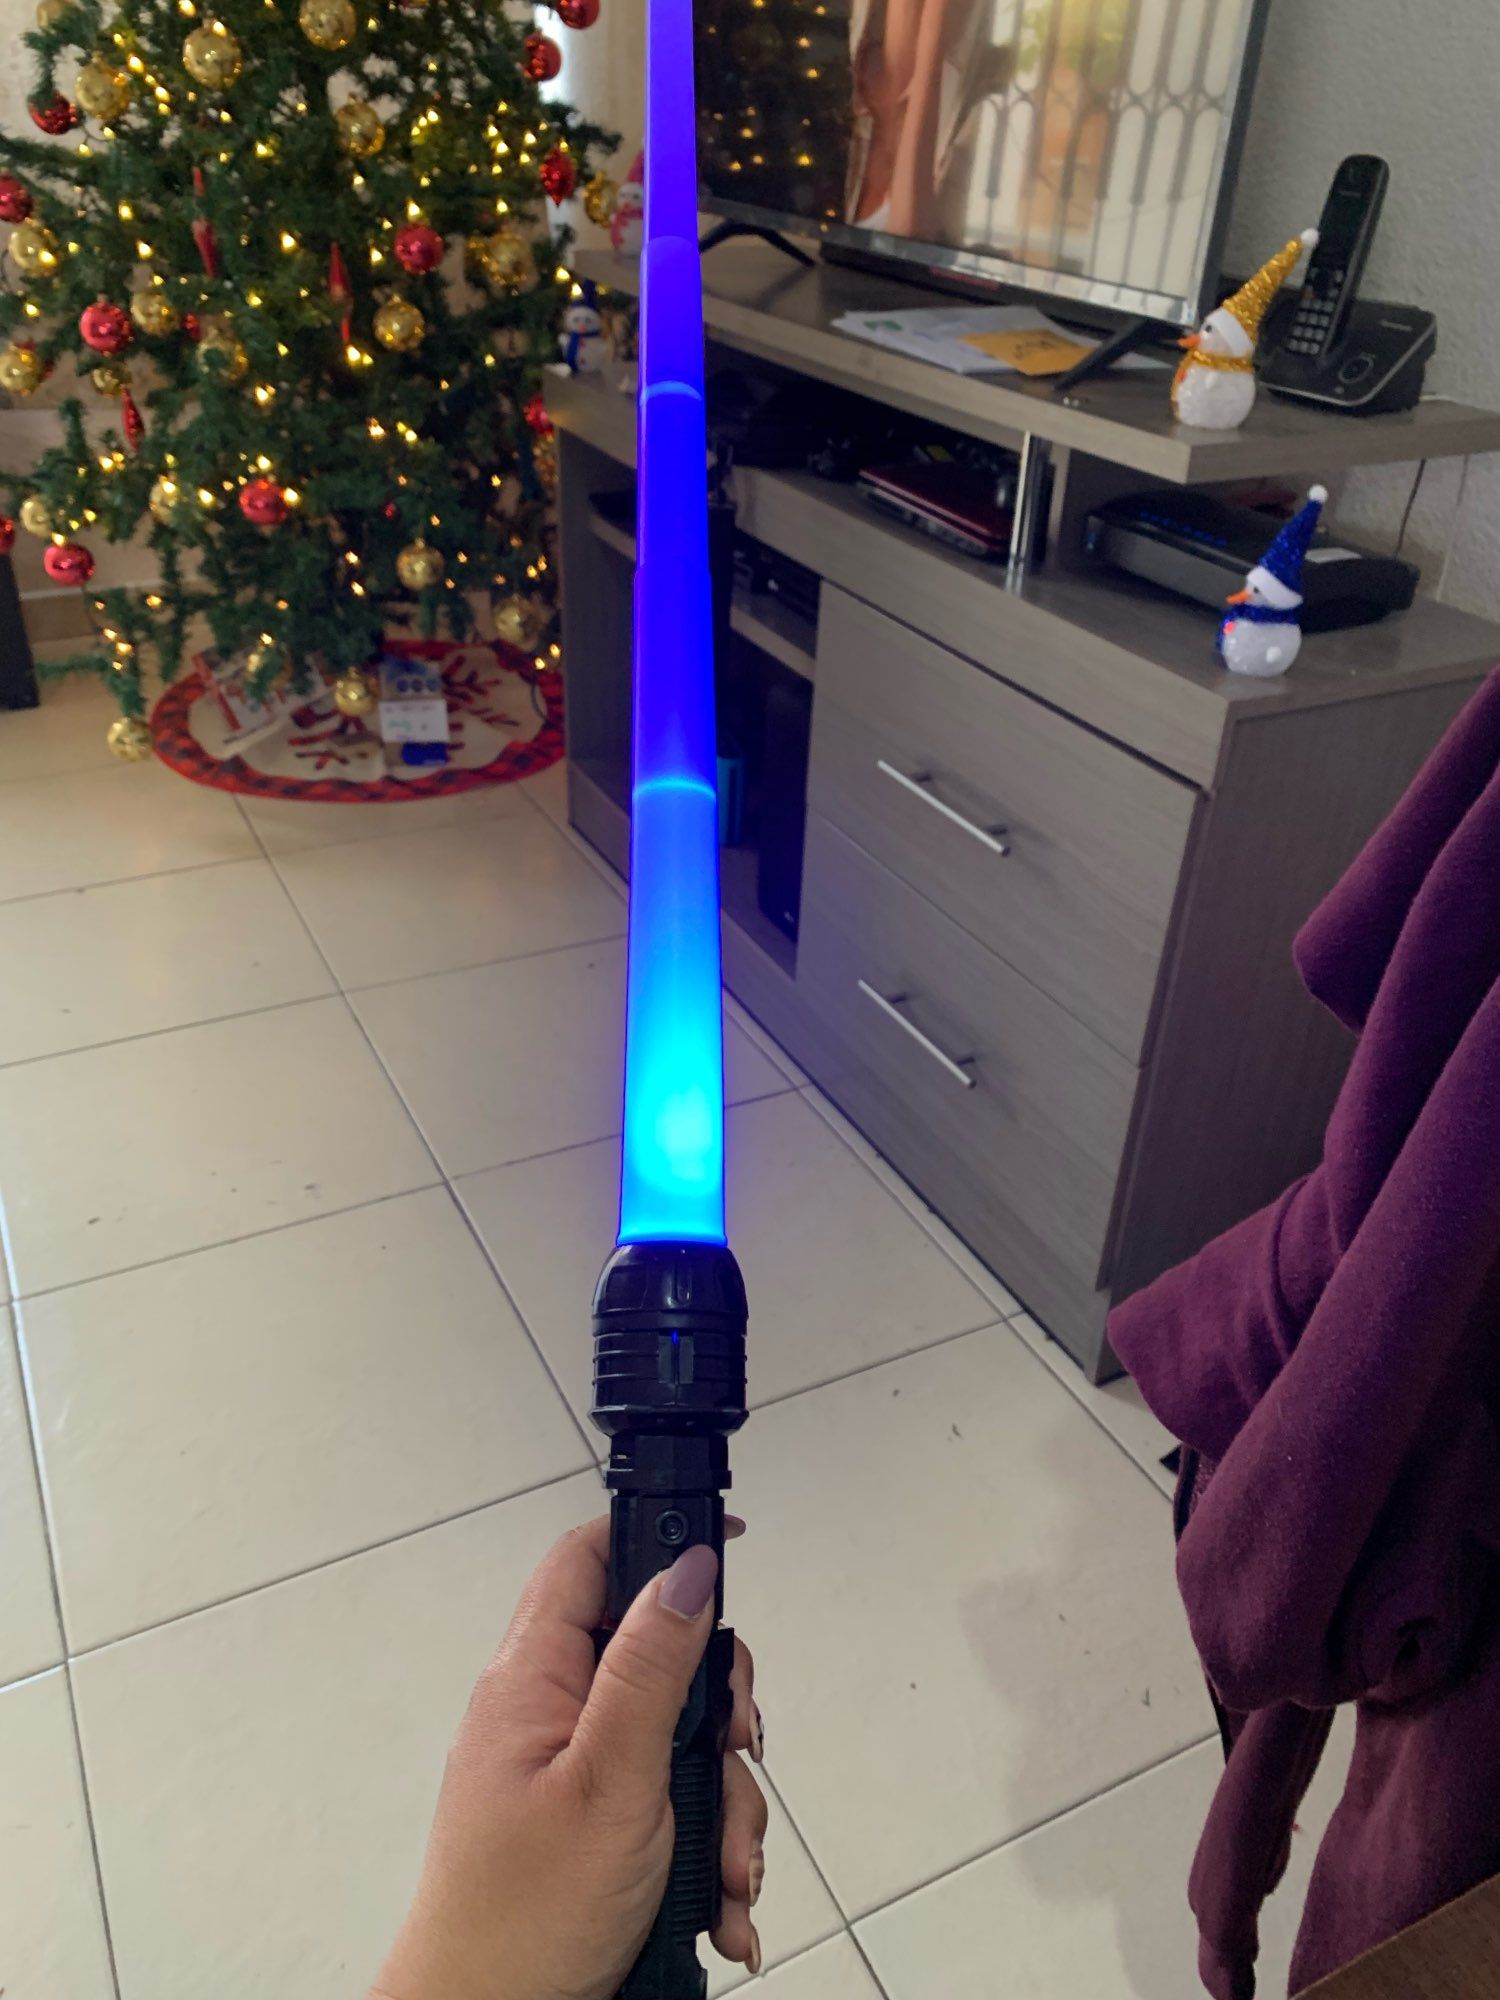 Star wars игрушка лазерный меч старварс джедайский меч детям космос